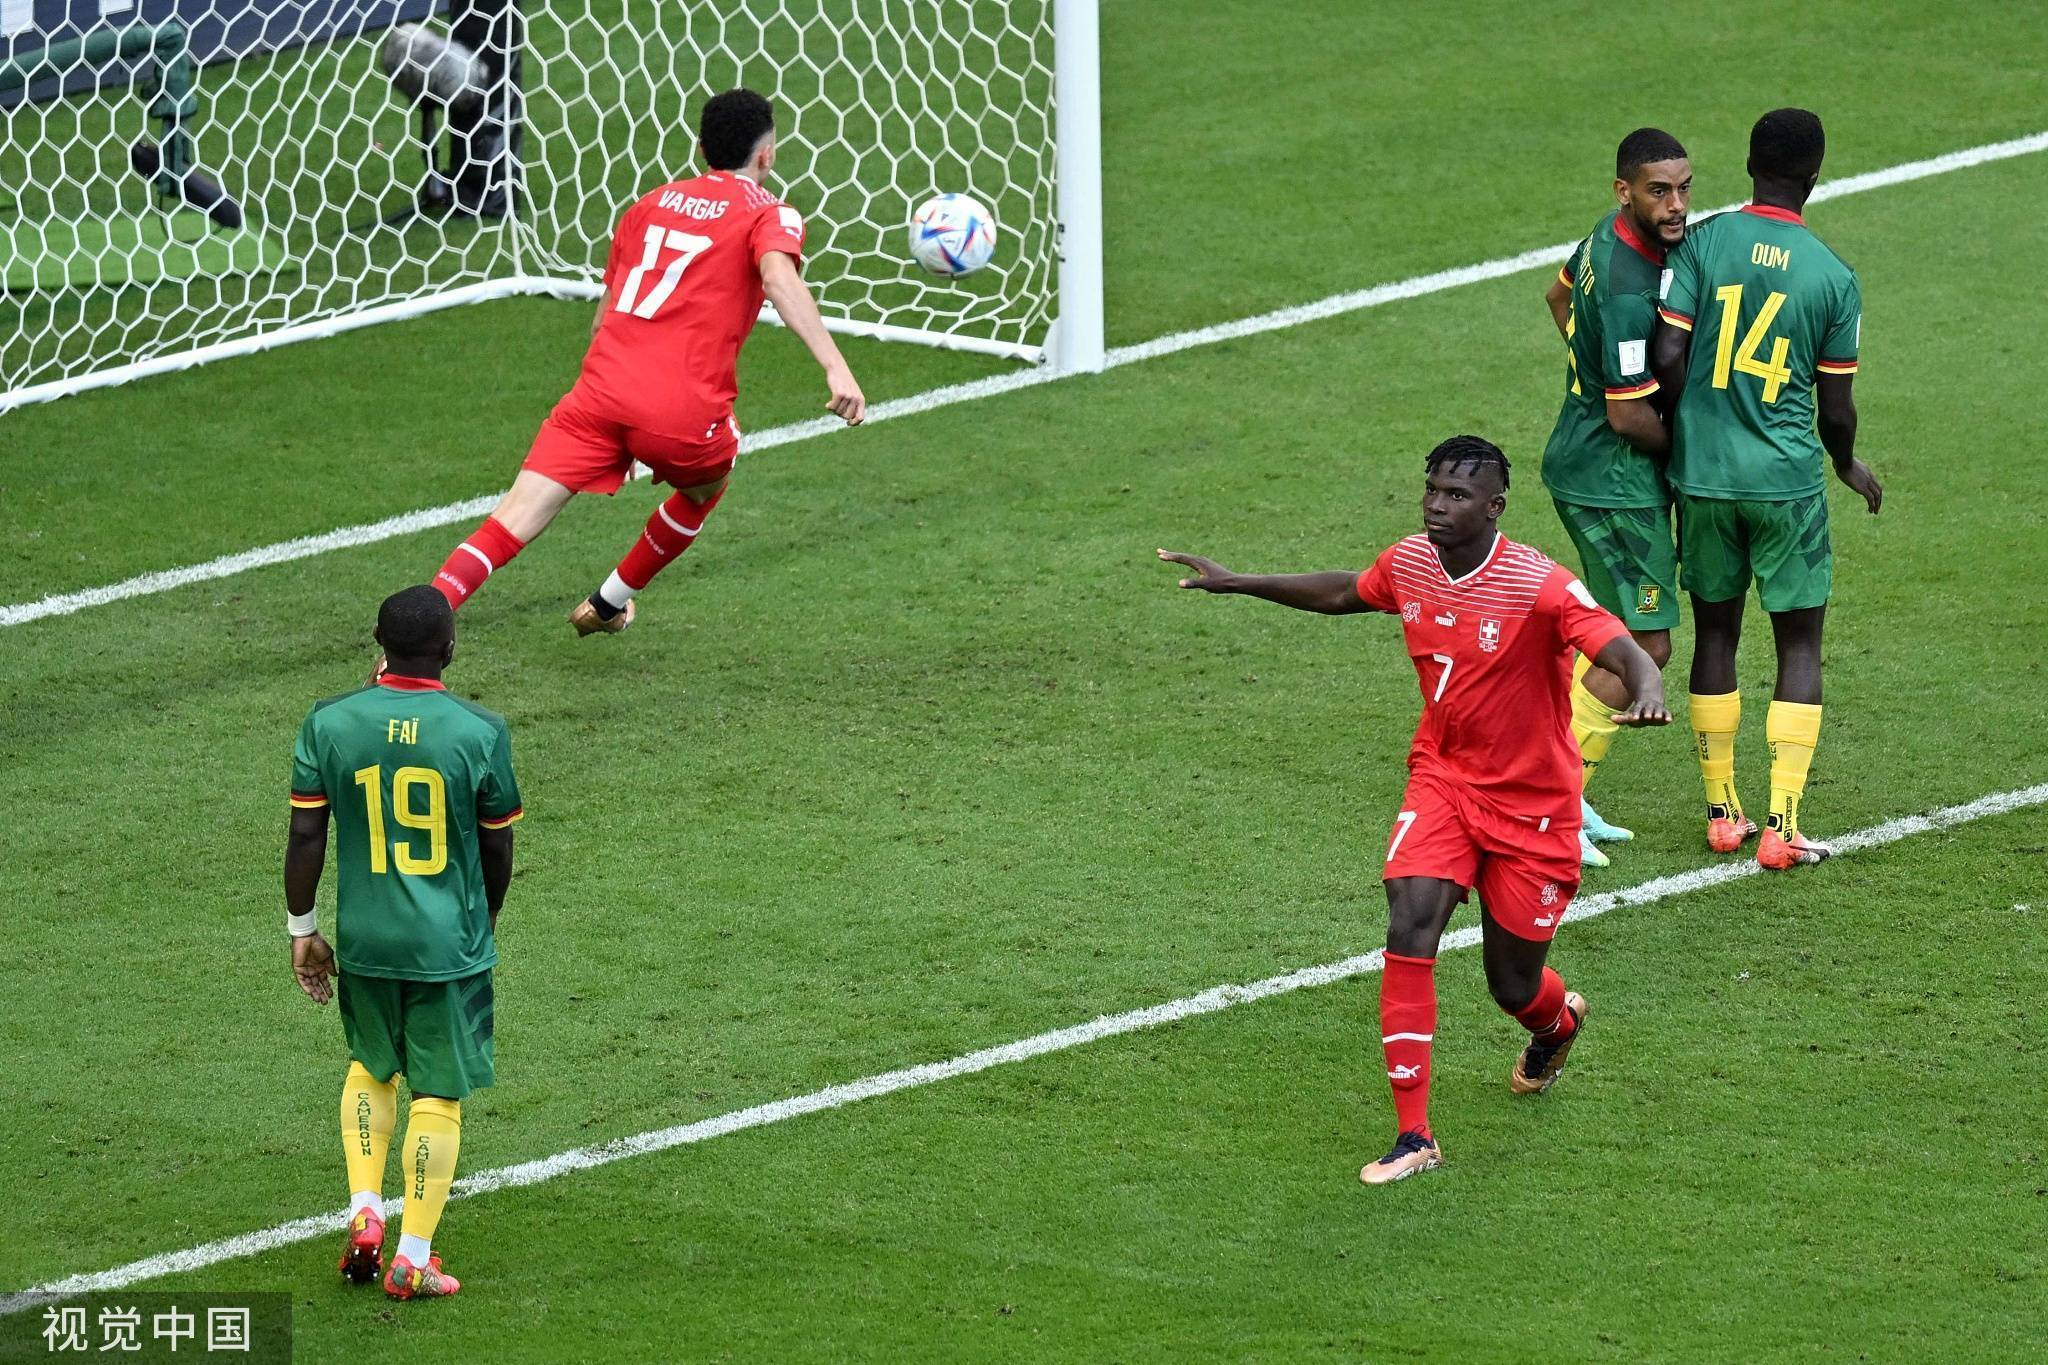 世界杯-索默屡救险恩博洛一击制胜 瑞士1-0喀麦隆